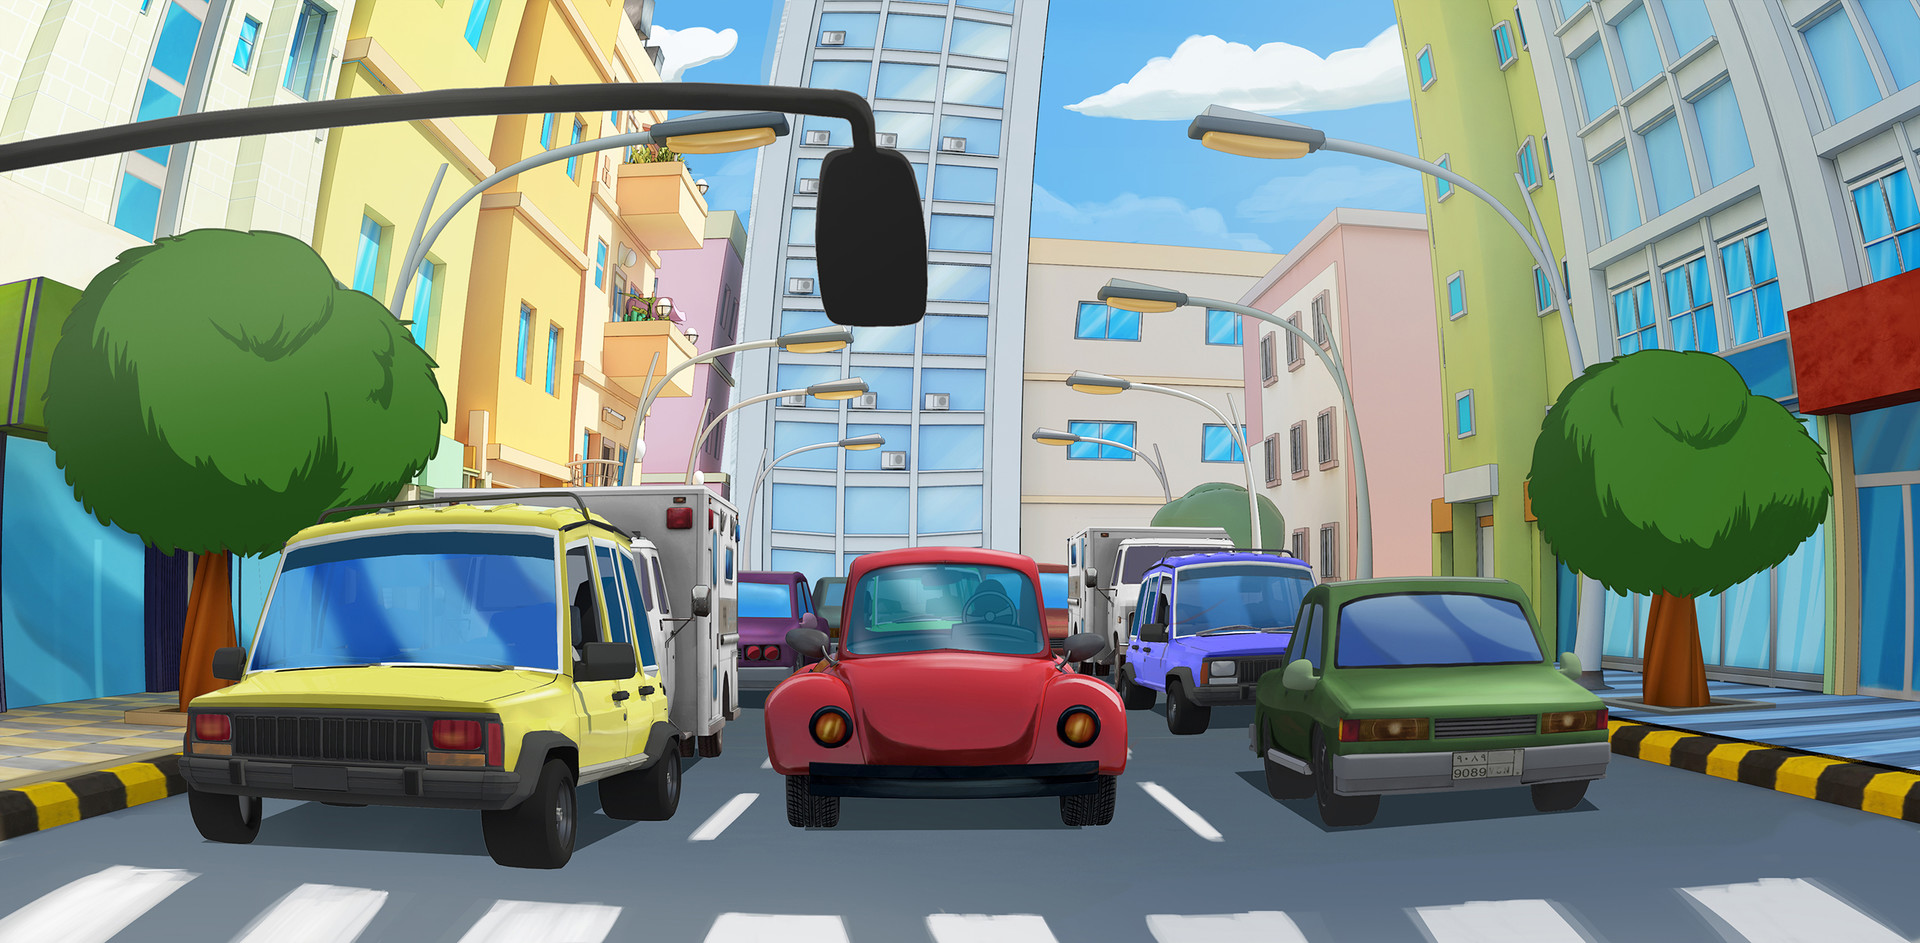 ArtStation - Traffic jam, Cartoon city